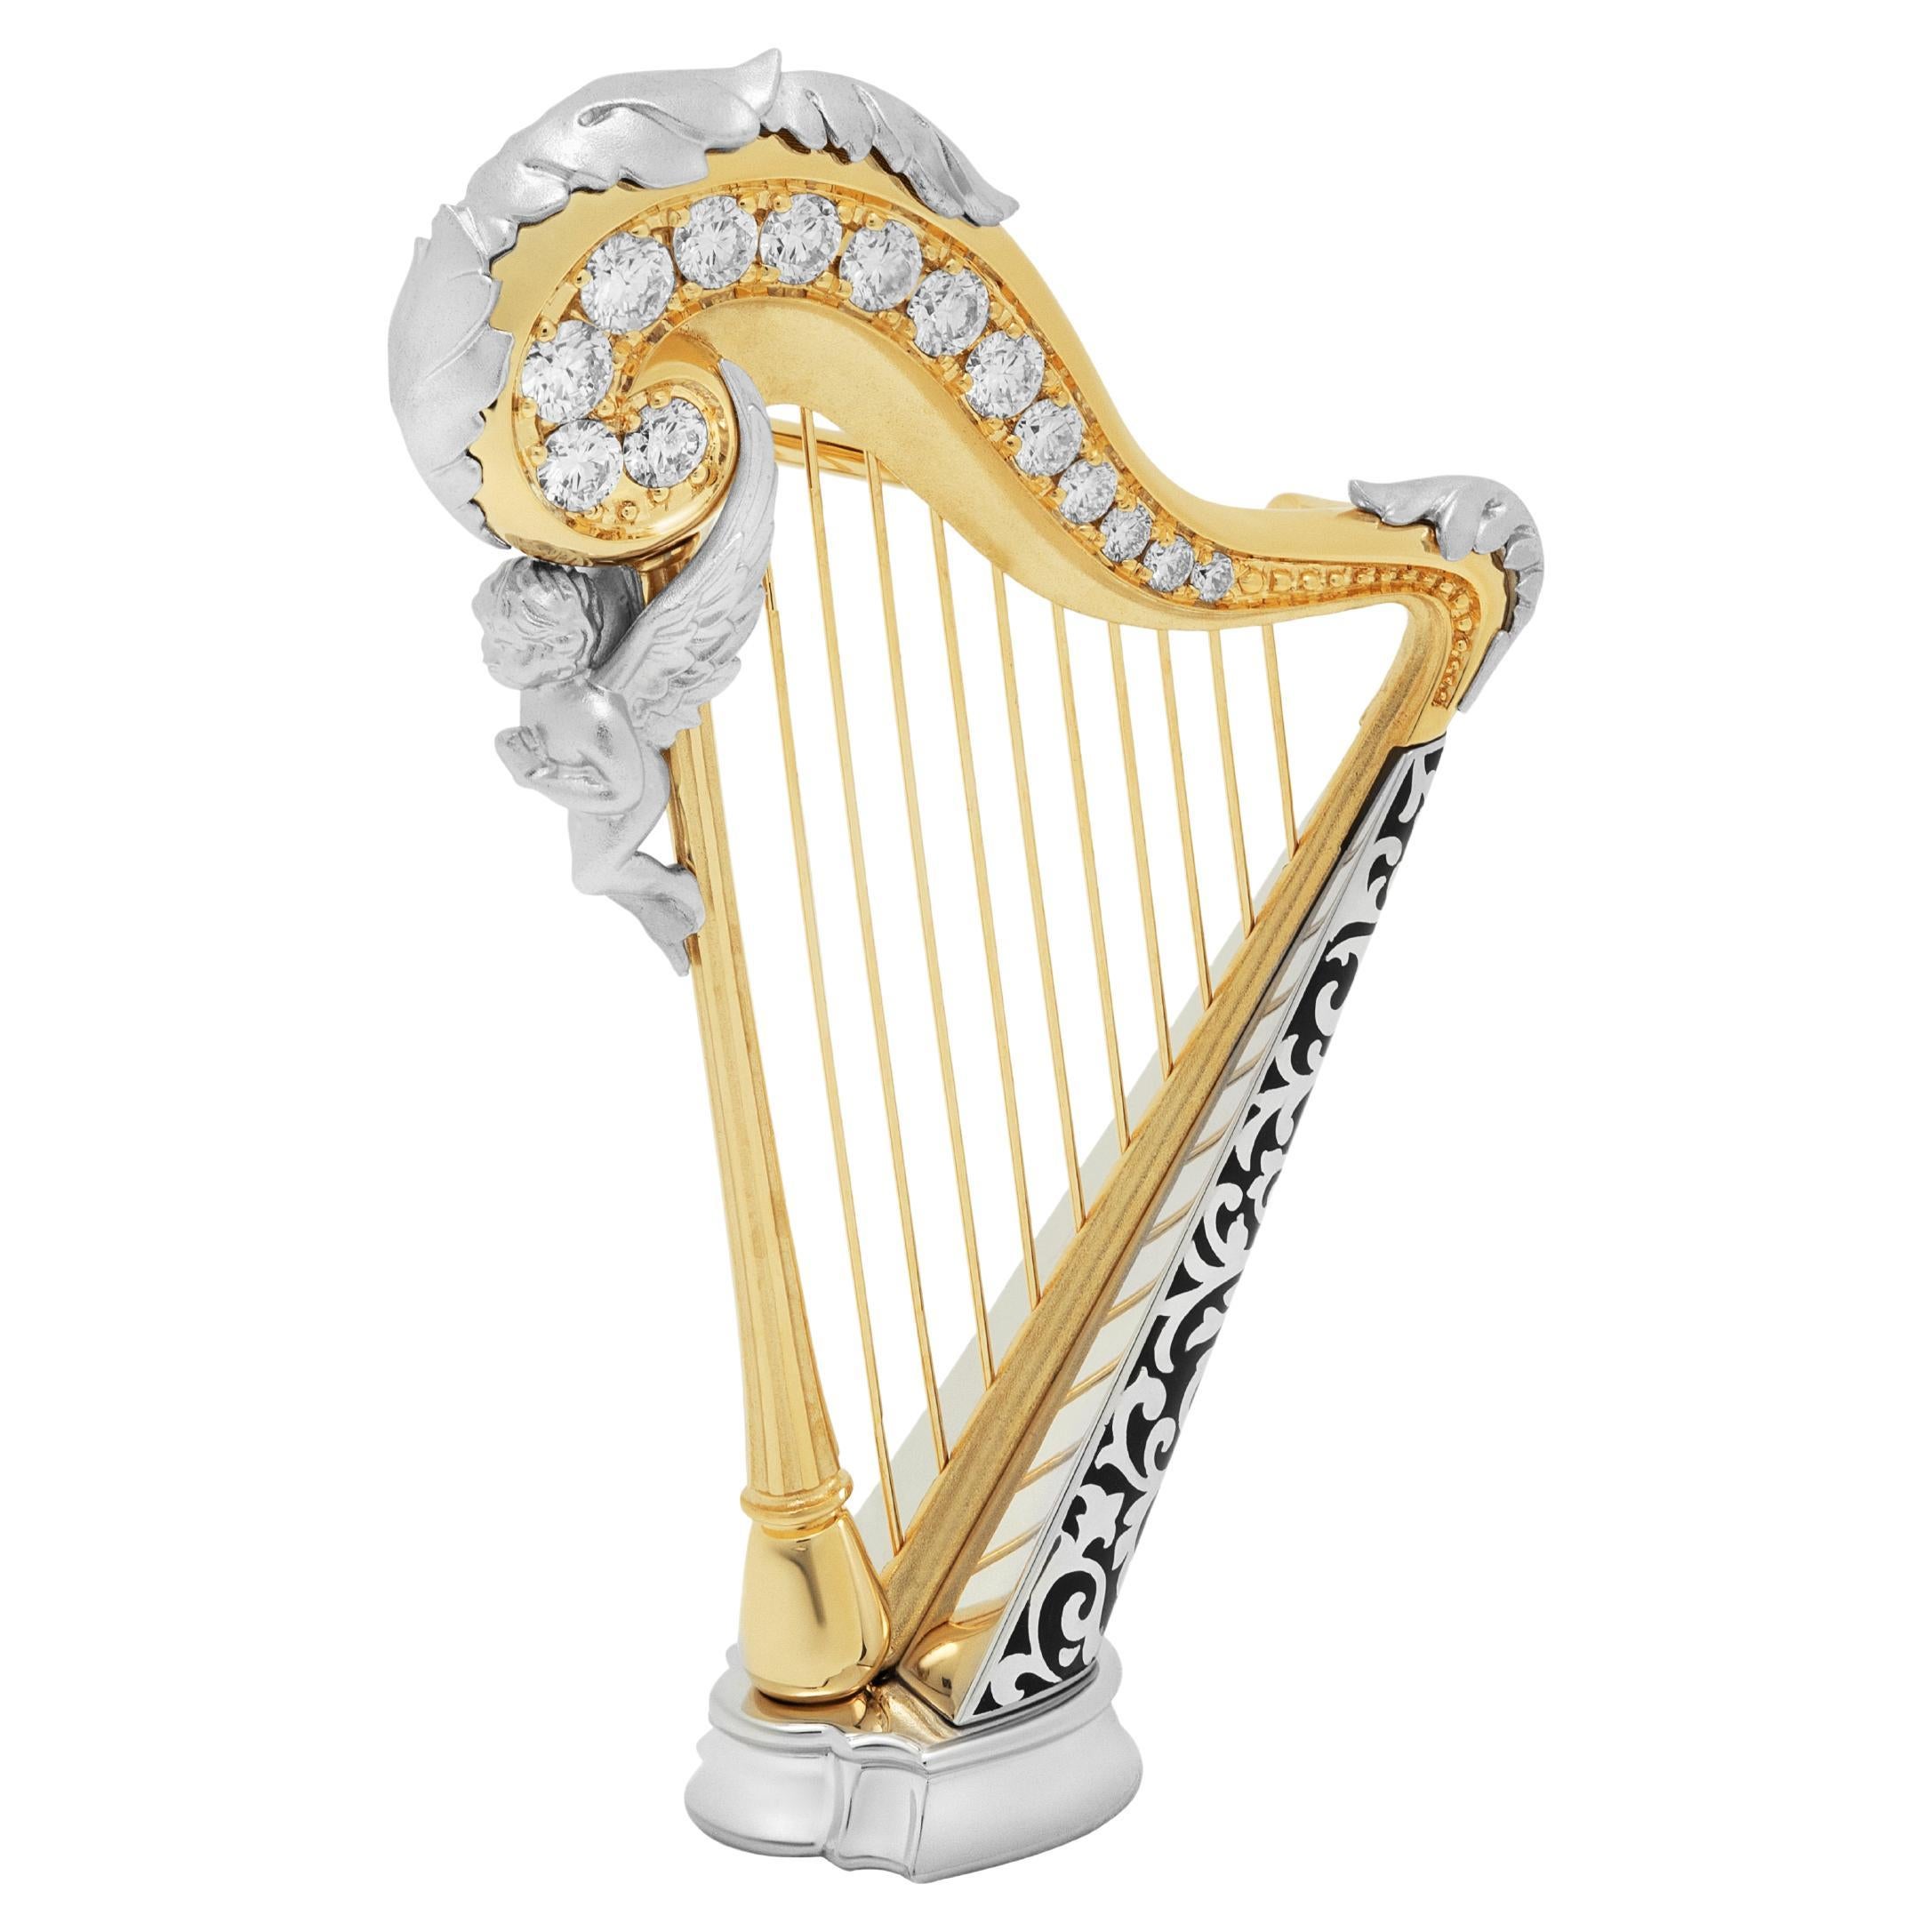 Broche harpe en or blanc et jaune 18 carats avec diamants